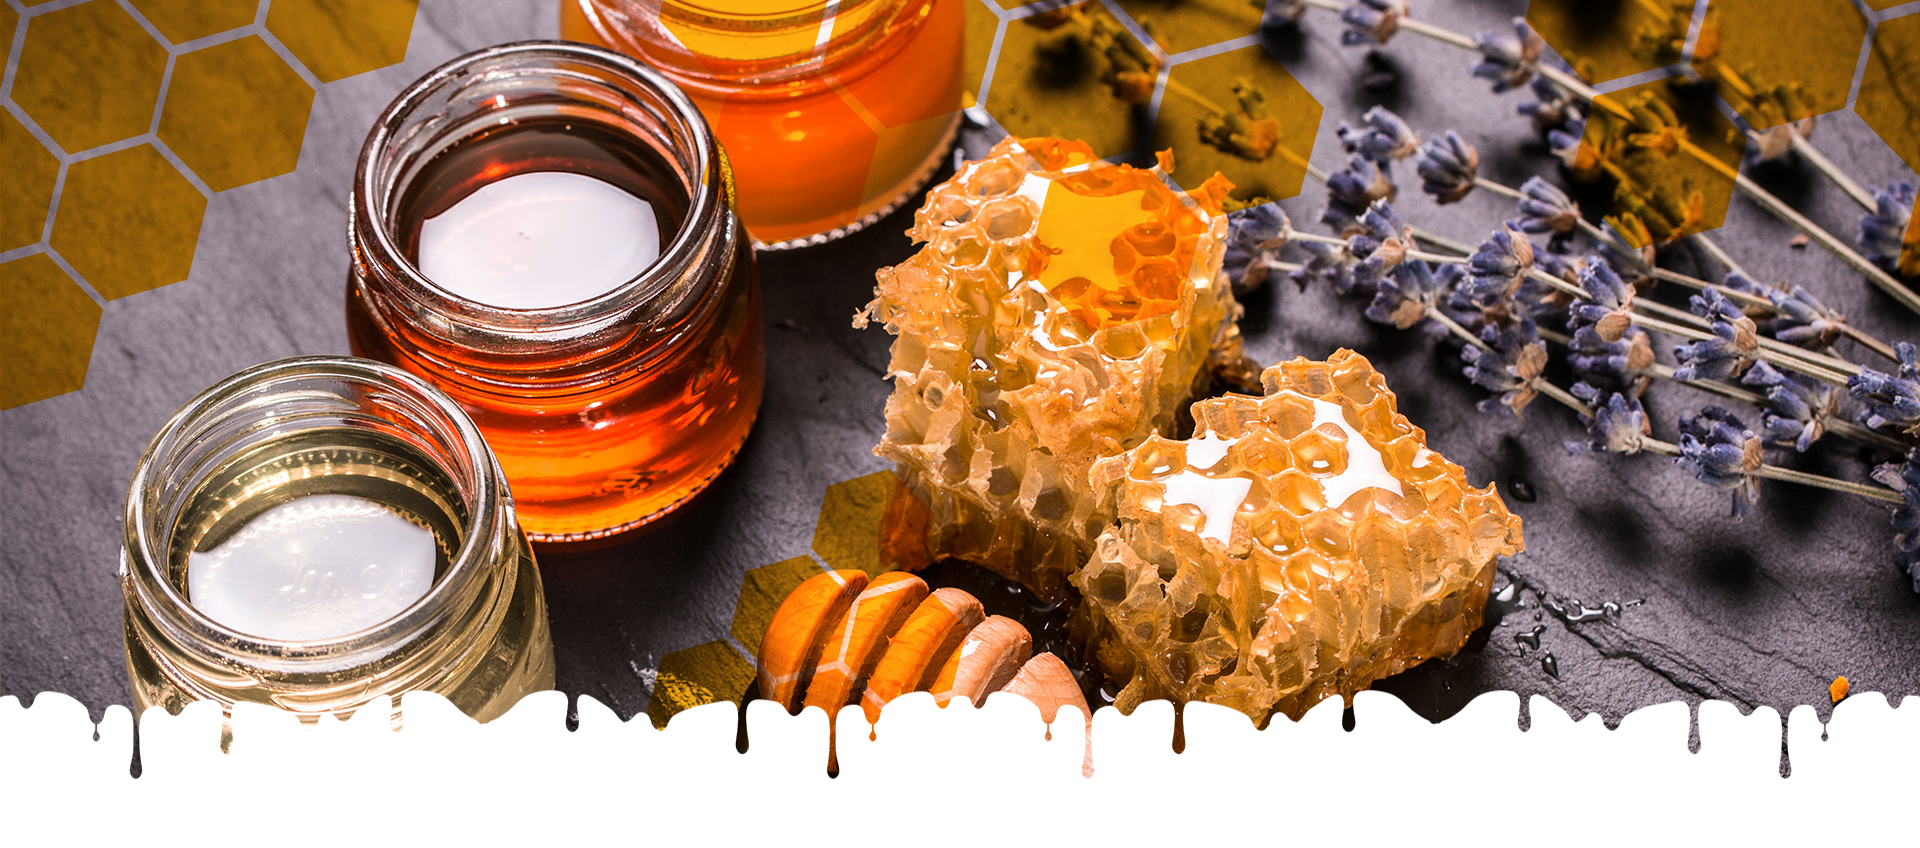 Медук. Мёд и продукты пчеловодства. Мед и воск. Мед с прополисом. Запах меда.